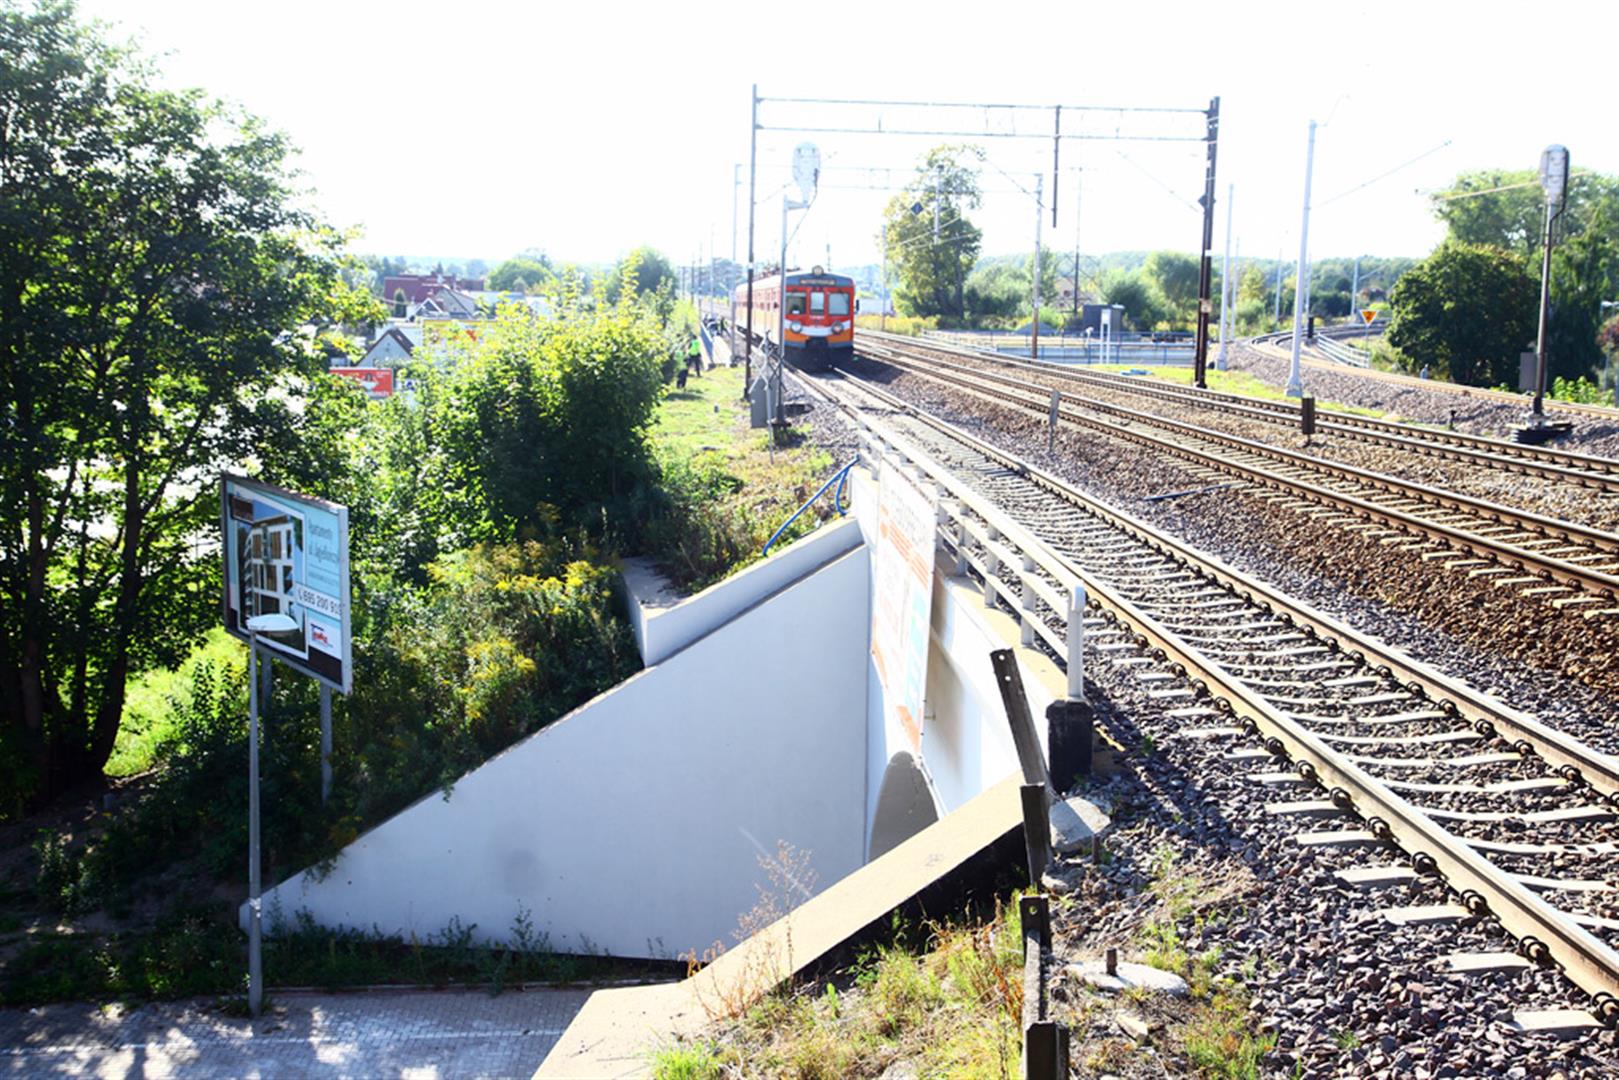 Pociąg potrącił w Olsztynie kilkunastoletniego chłopca. Jego stan jest bardzo ciężki